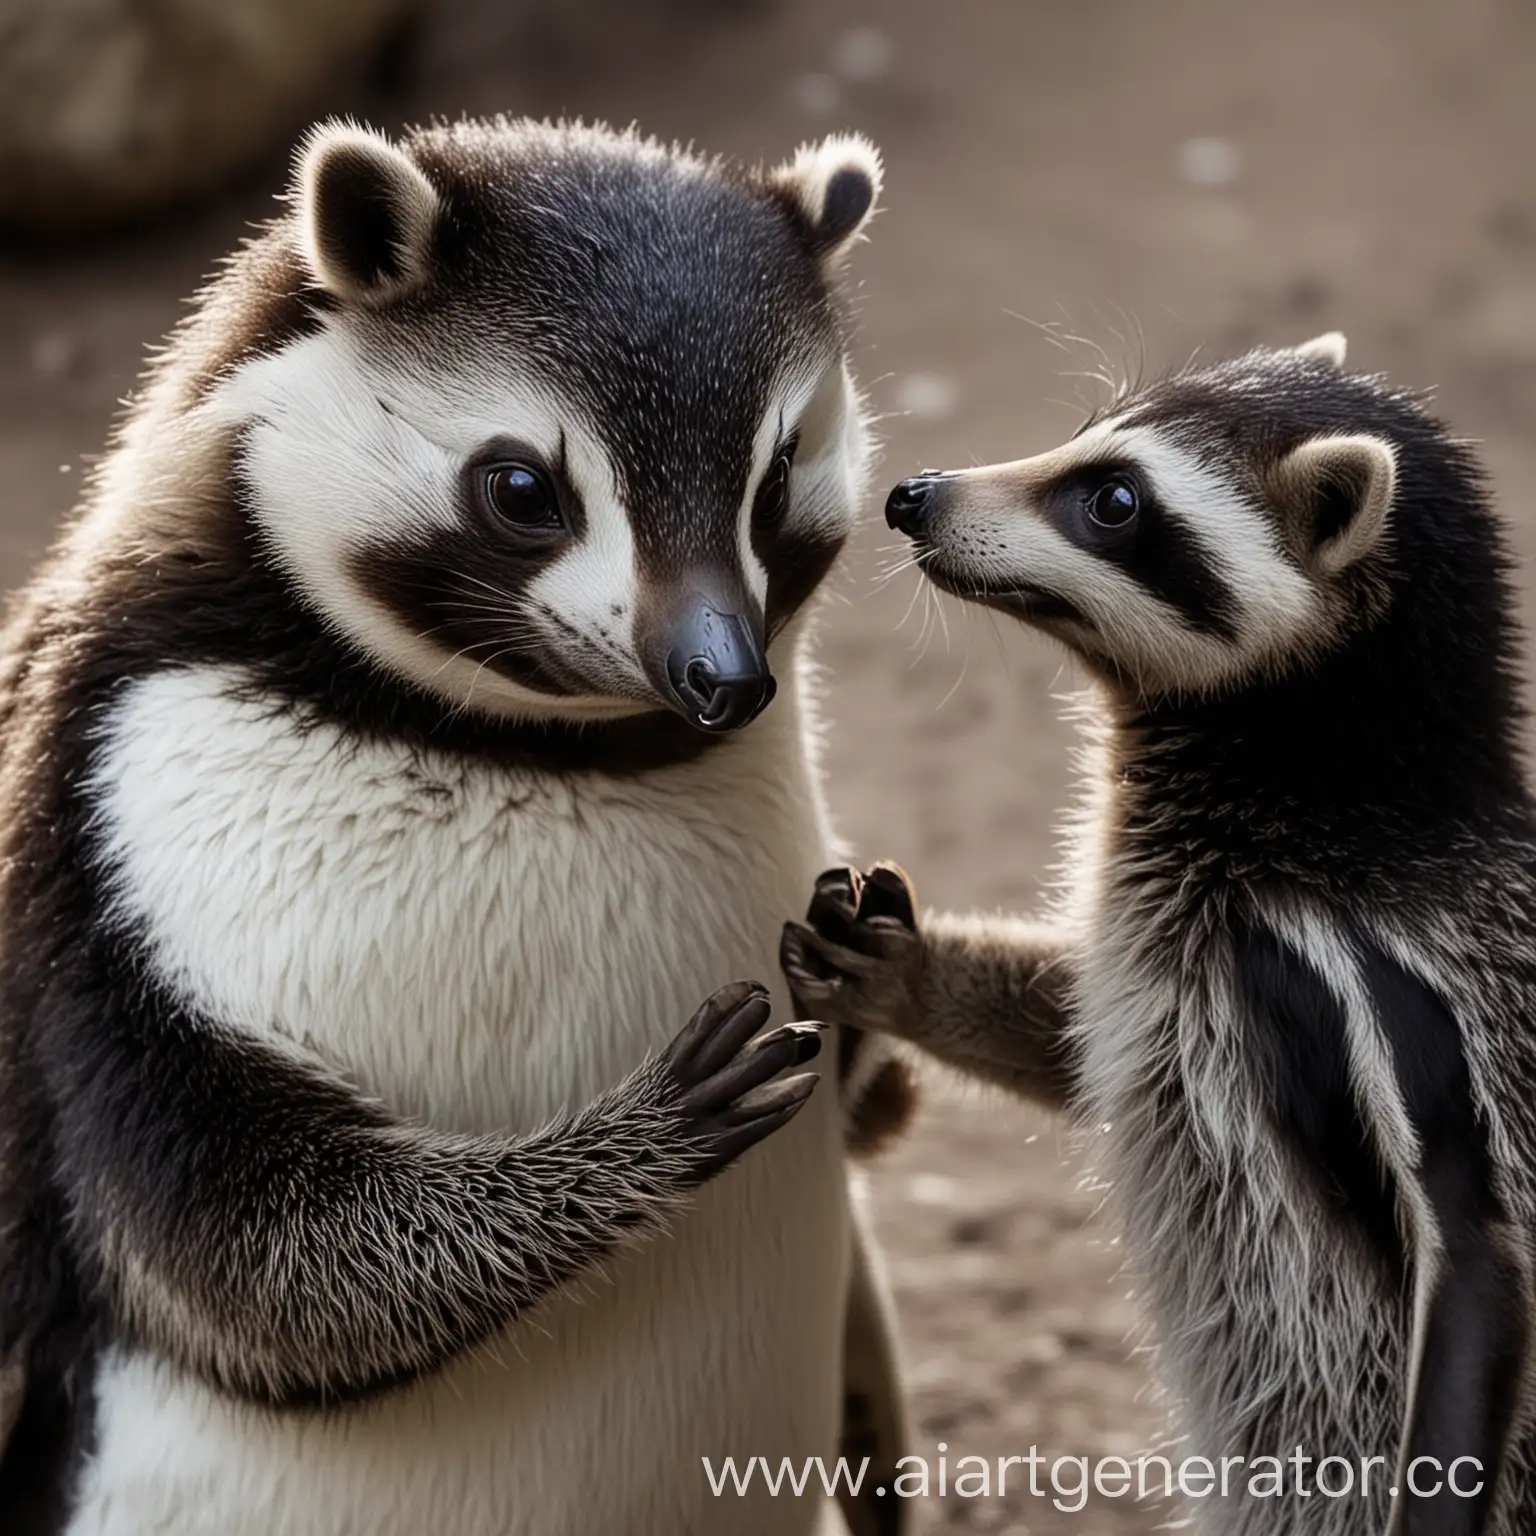 пингвин смотрит на енота влюбленными глазами и держит за руку
